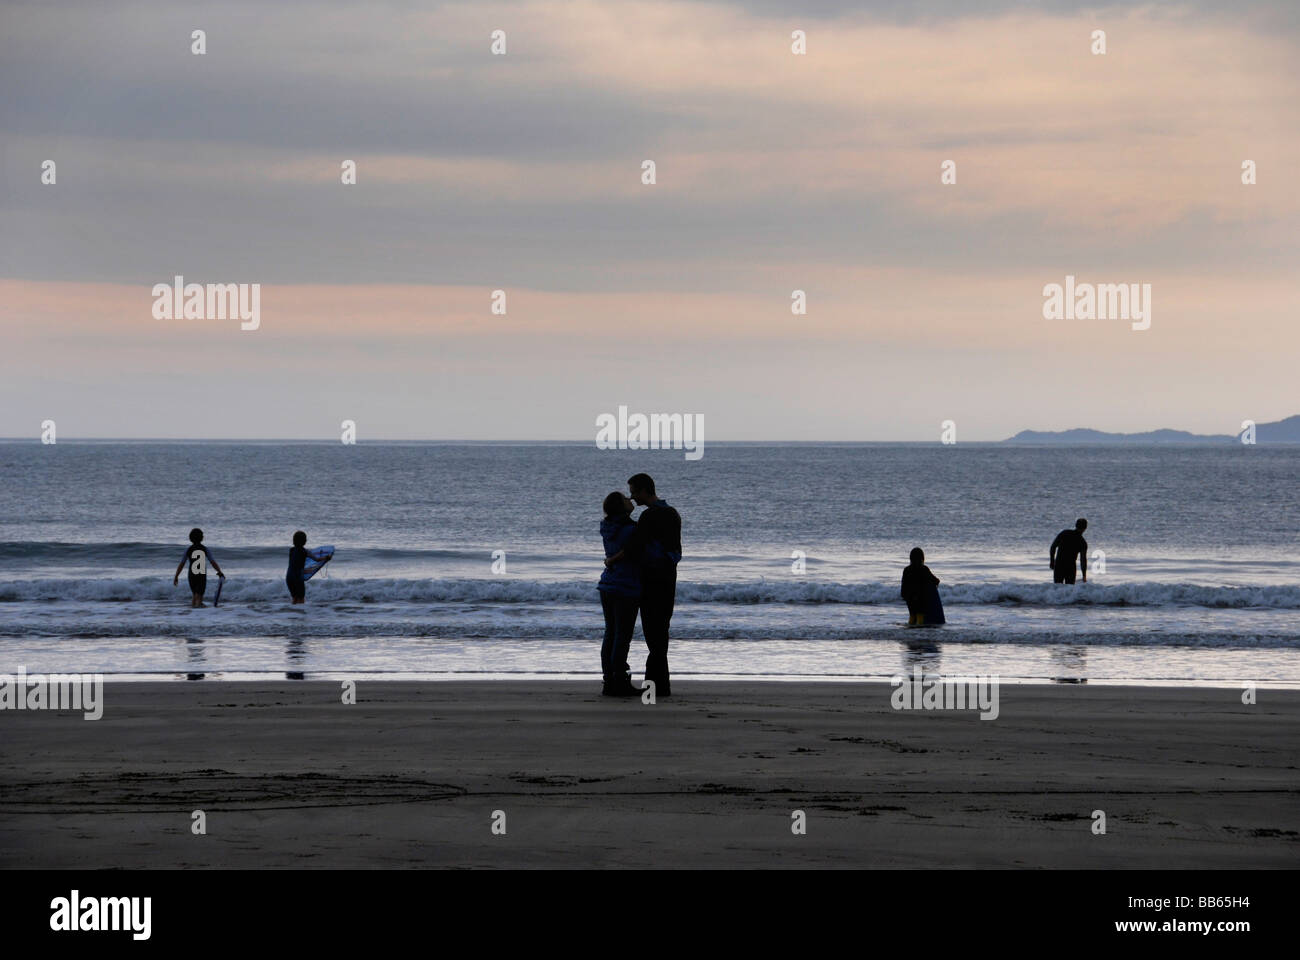 Giovane kiss in silhouette sulla spiaggia in serata in Galles mentre i bambini surf Foto Stock